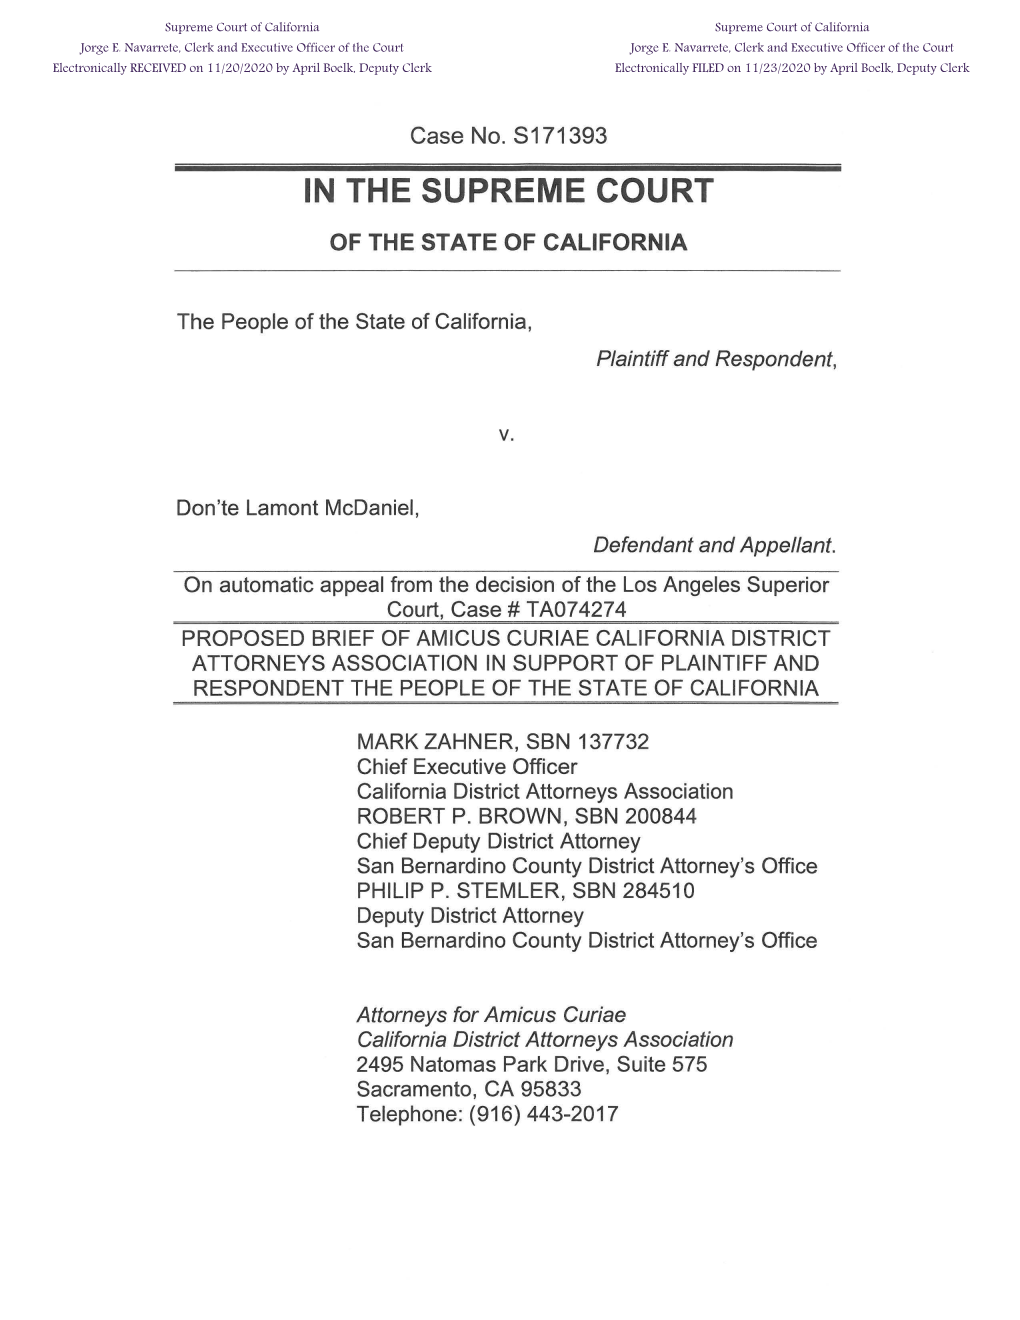 Amicus Curiae Brief of California District Attorneys Association